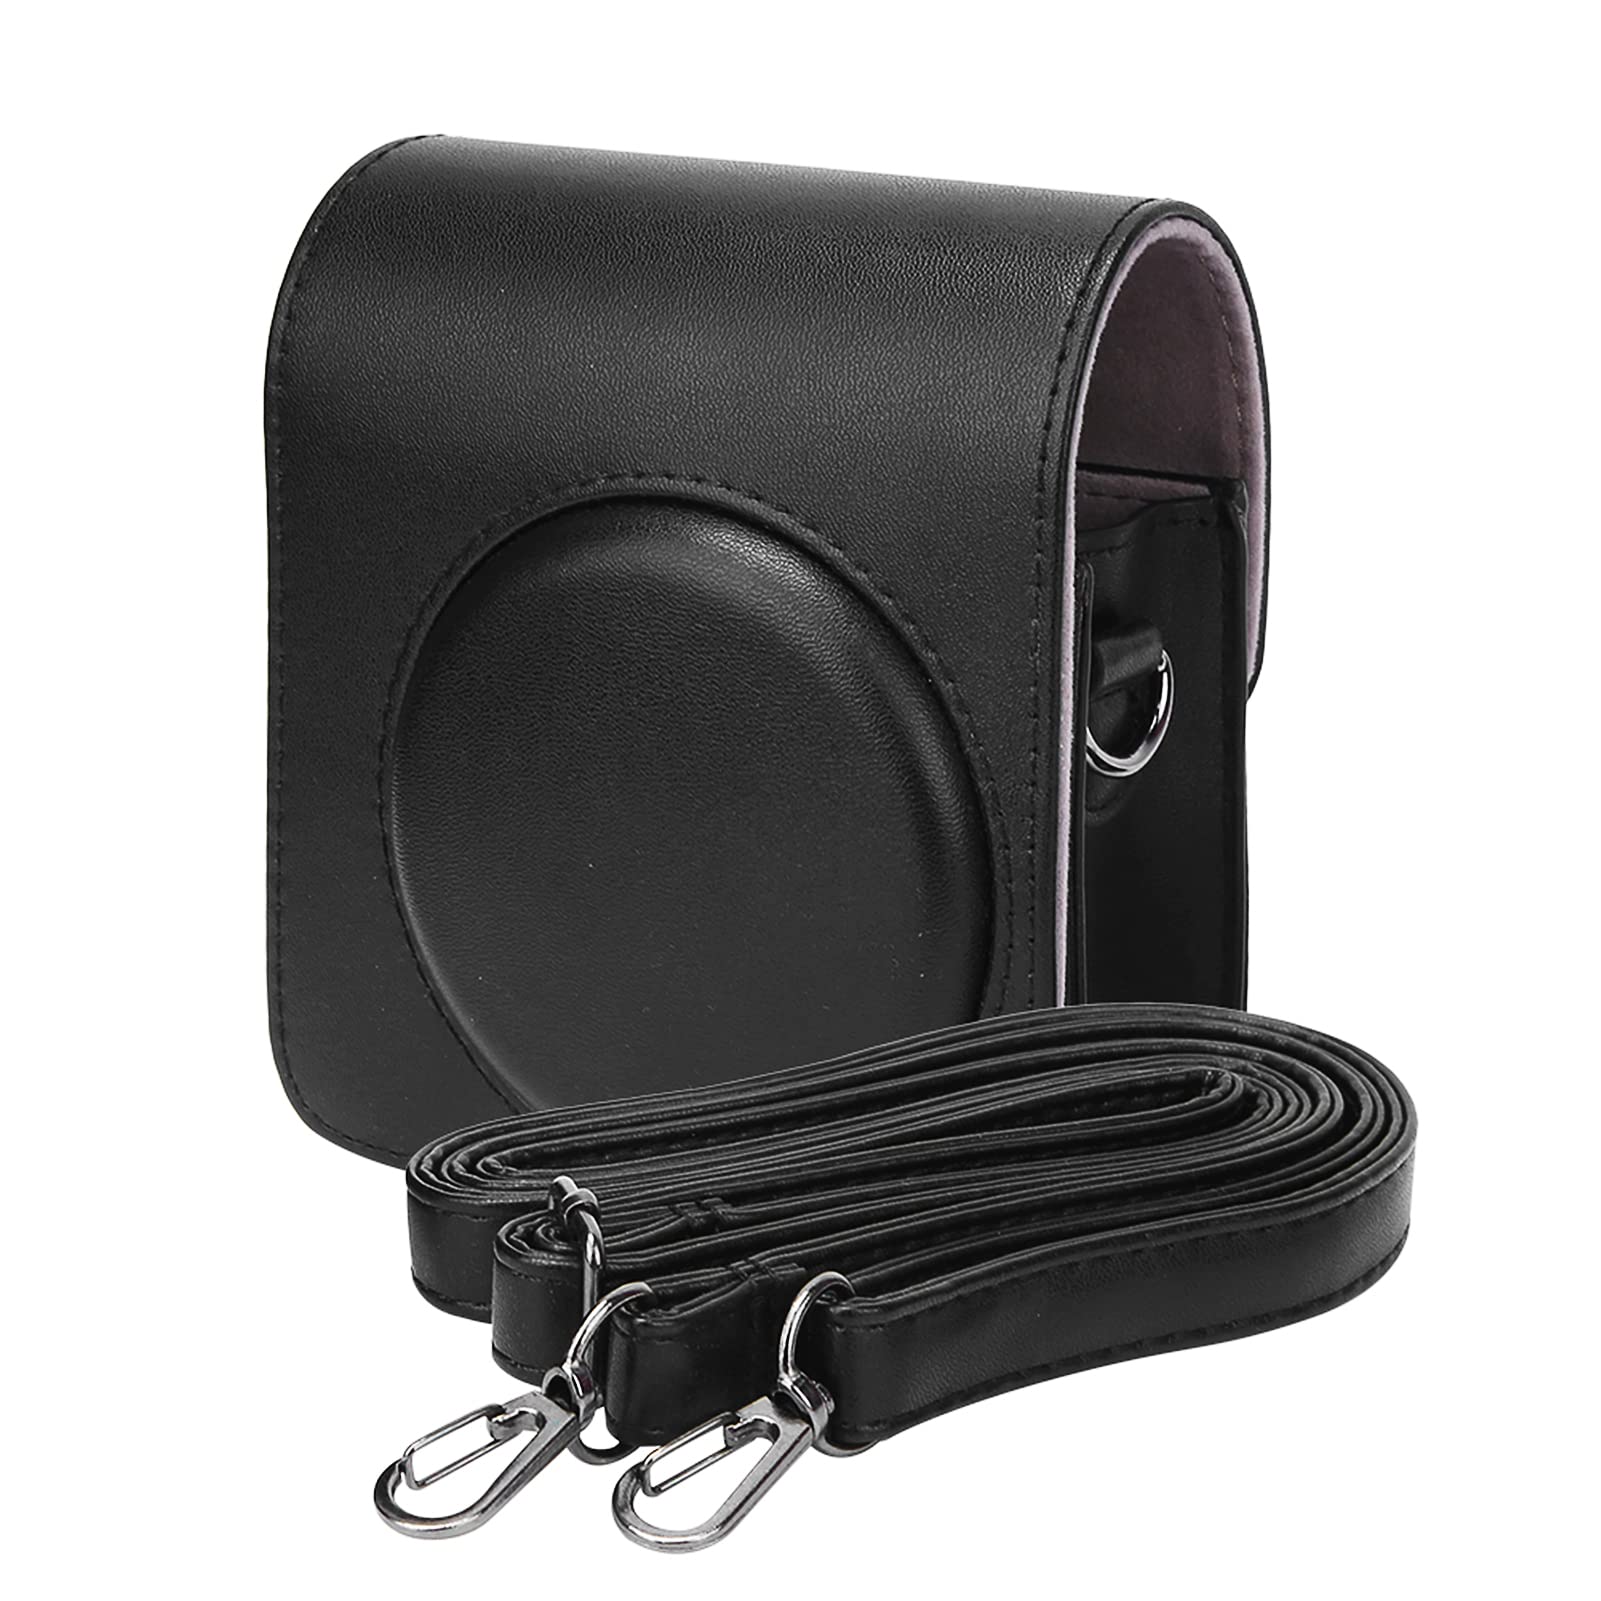 Sofortbildkameras Tasche Kompatibel mit Fujifilm Instax 70, PU-Lederschutzhülle Schutzhülle und Tragbare Tasche, Sofortbildkamera Tasche mit Zubehörtasche und Verstellbarem